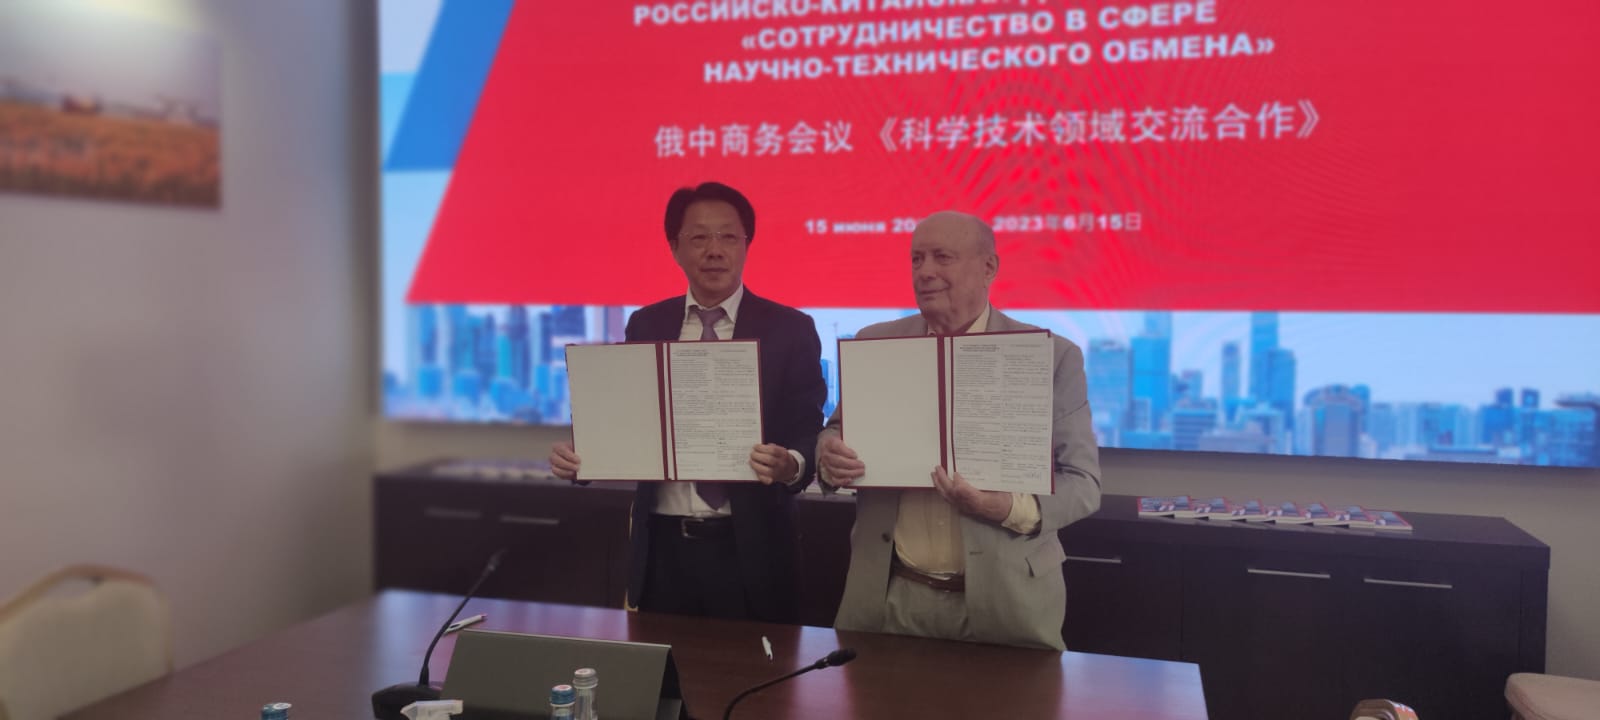 Российско-китайская деловая встреча «Сотрудничество в сфере научно-технического обмена»